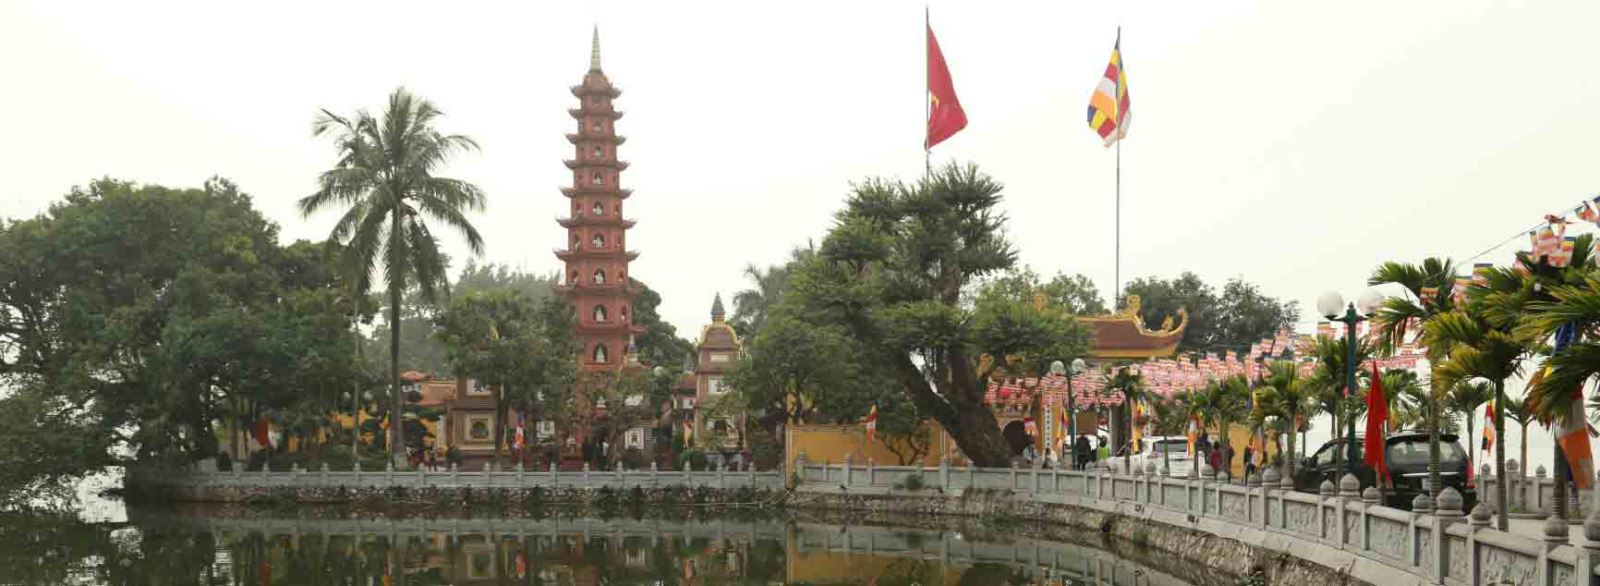 La pagode Tran Quoc